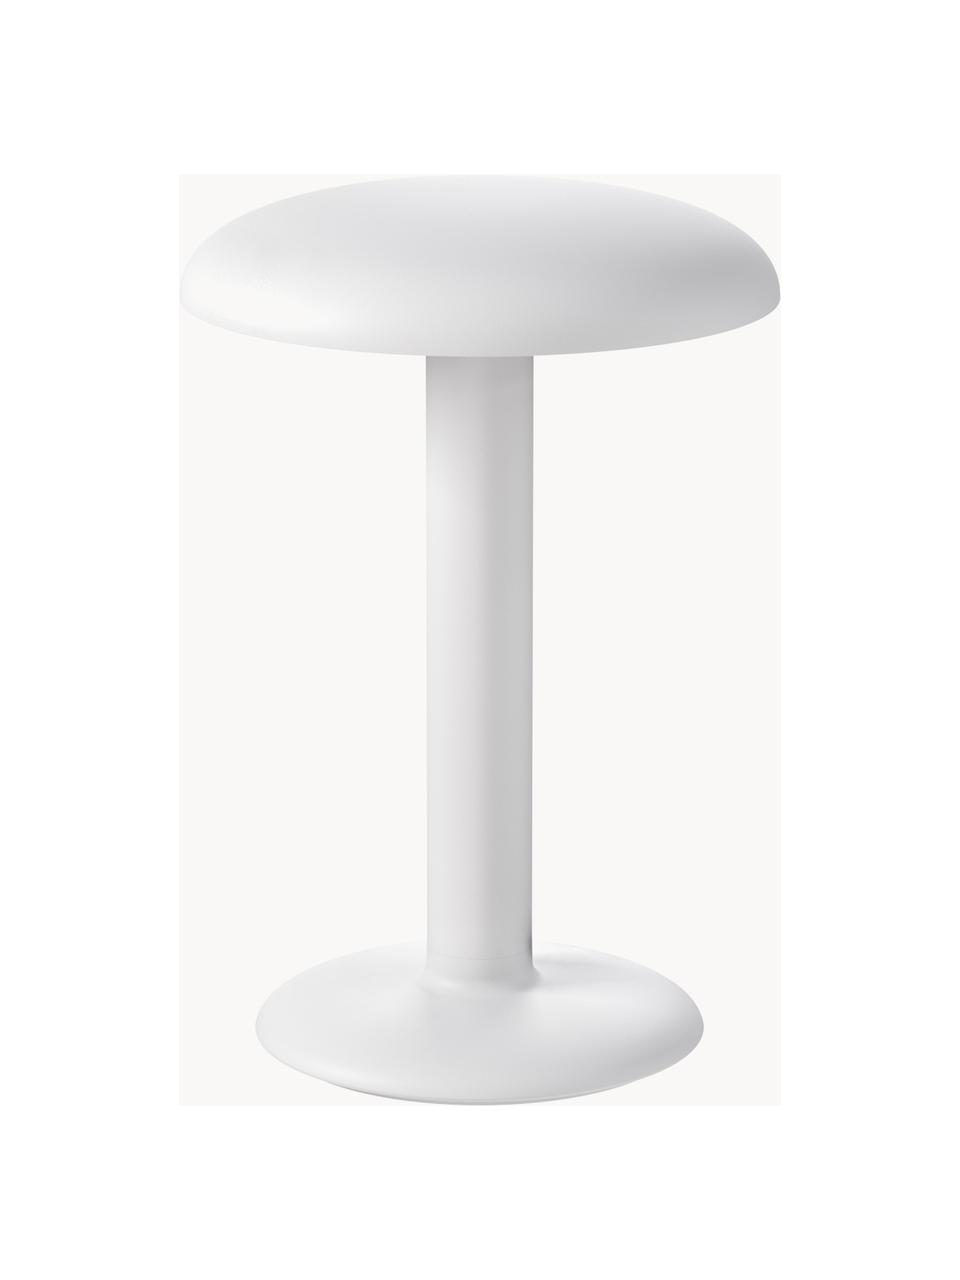 Lampa stołowa LED z funkcją przyciemniania Gustave, Aluminium powlekane, Biały, matowy, Ø 16 x 22 cm